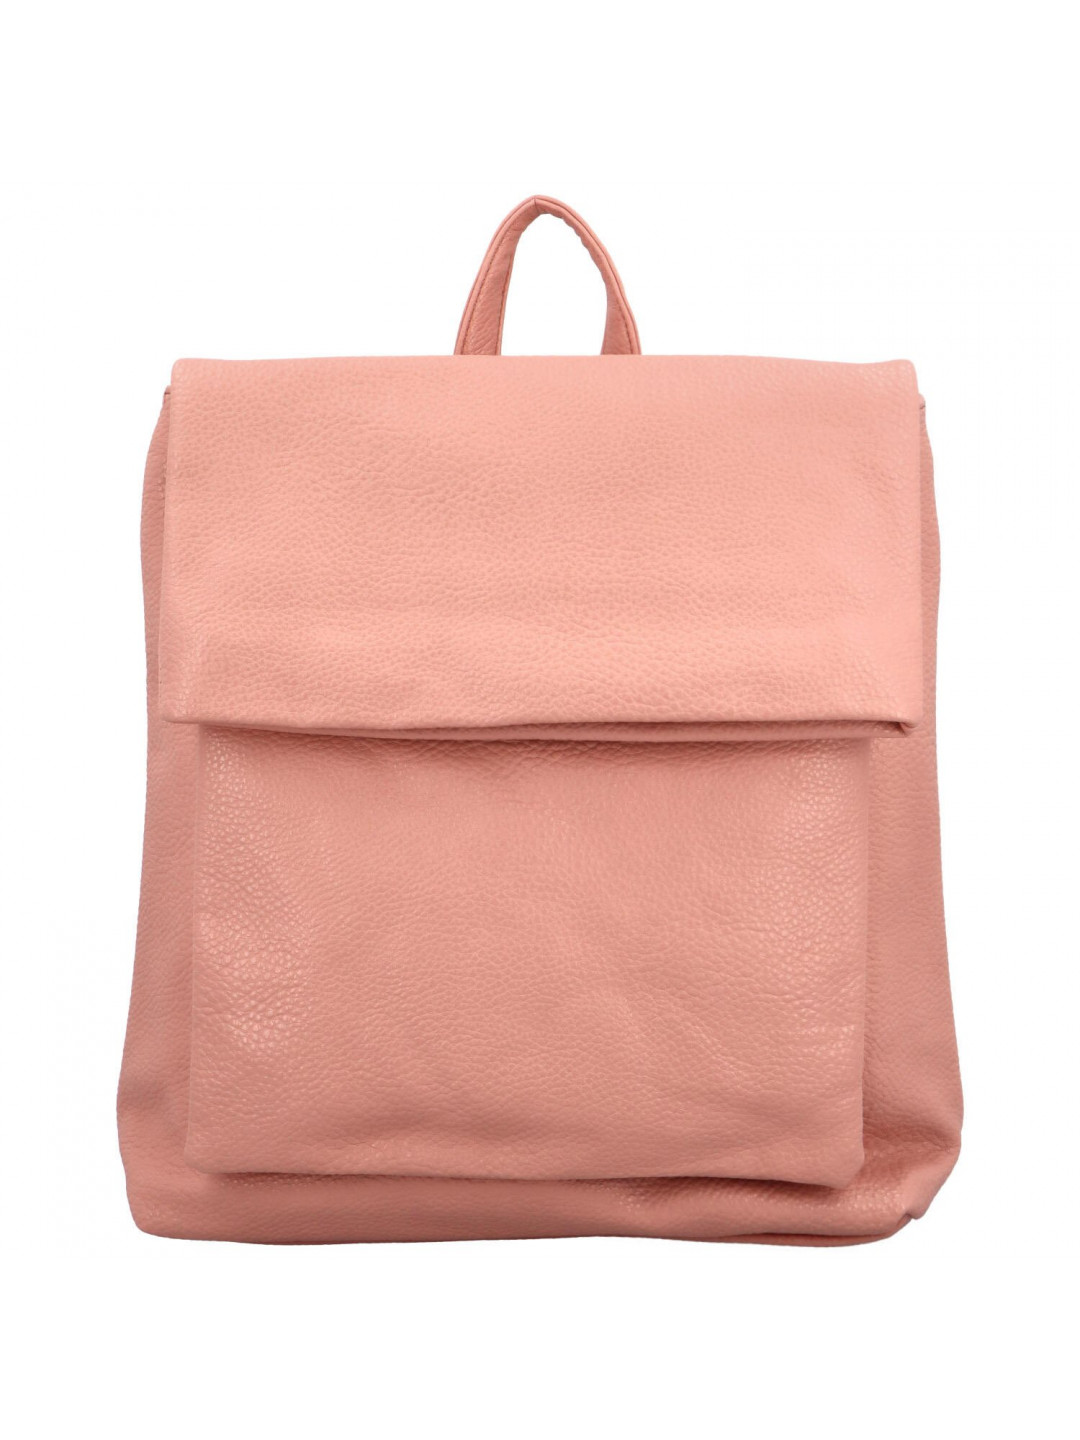 Dámský kabelko batoh růžový – Firenze Noland